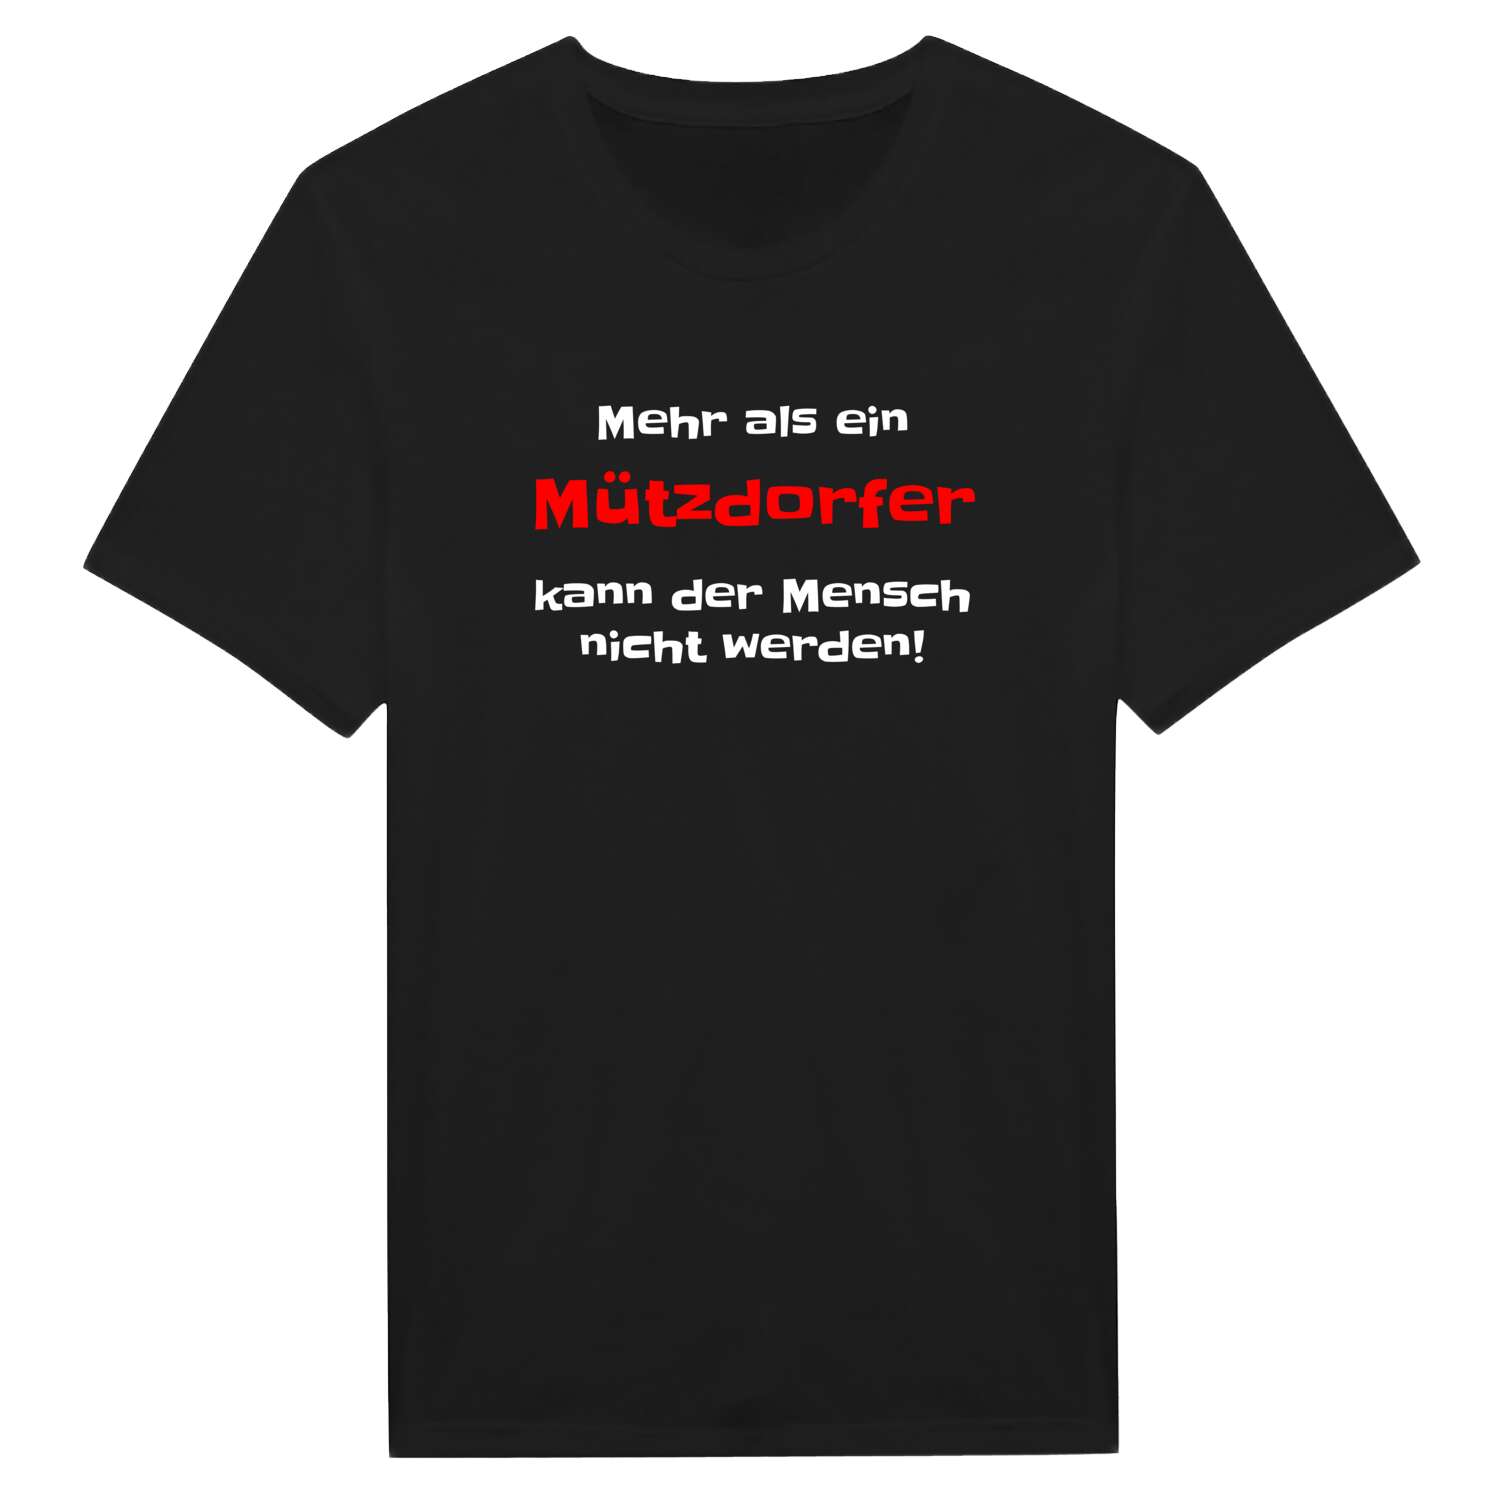 Mützdorf T-Shirt »Mehr als ein«